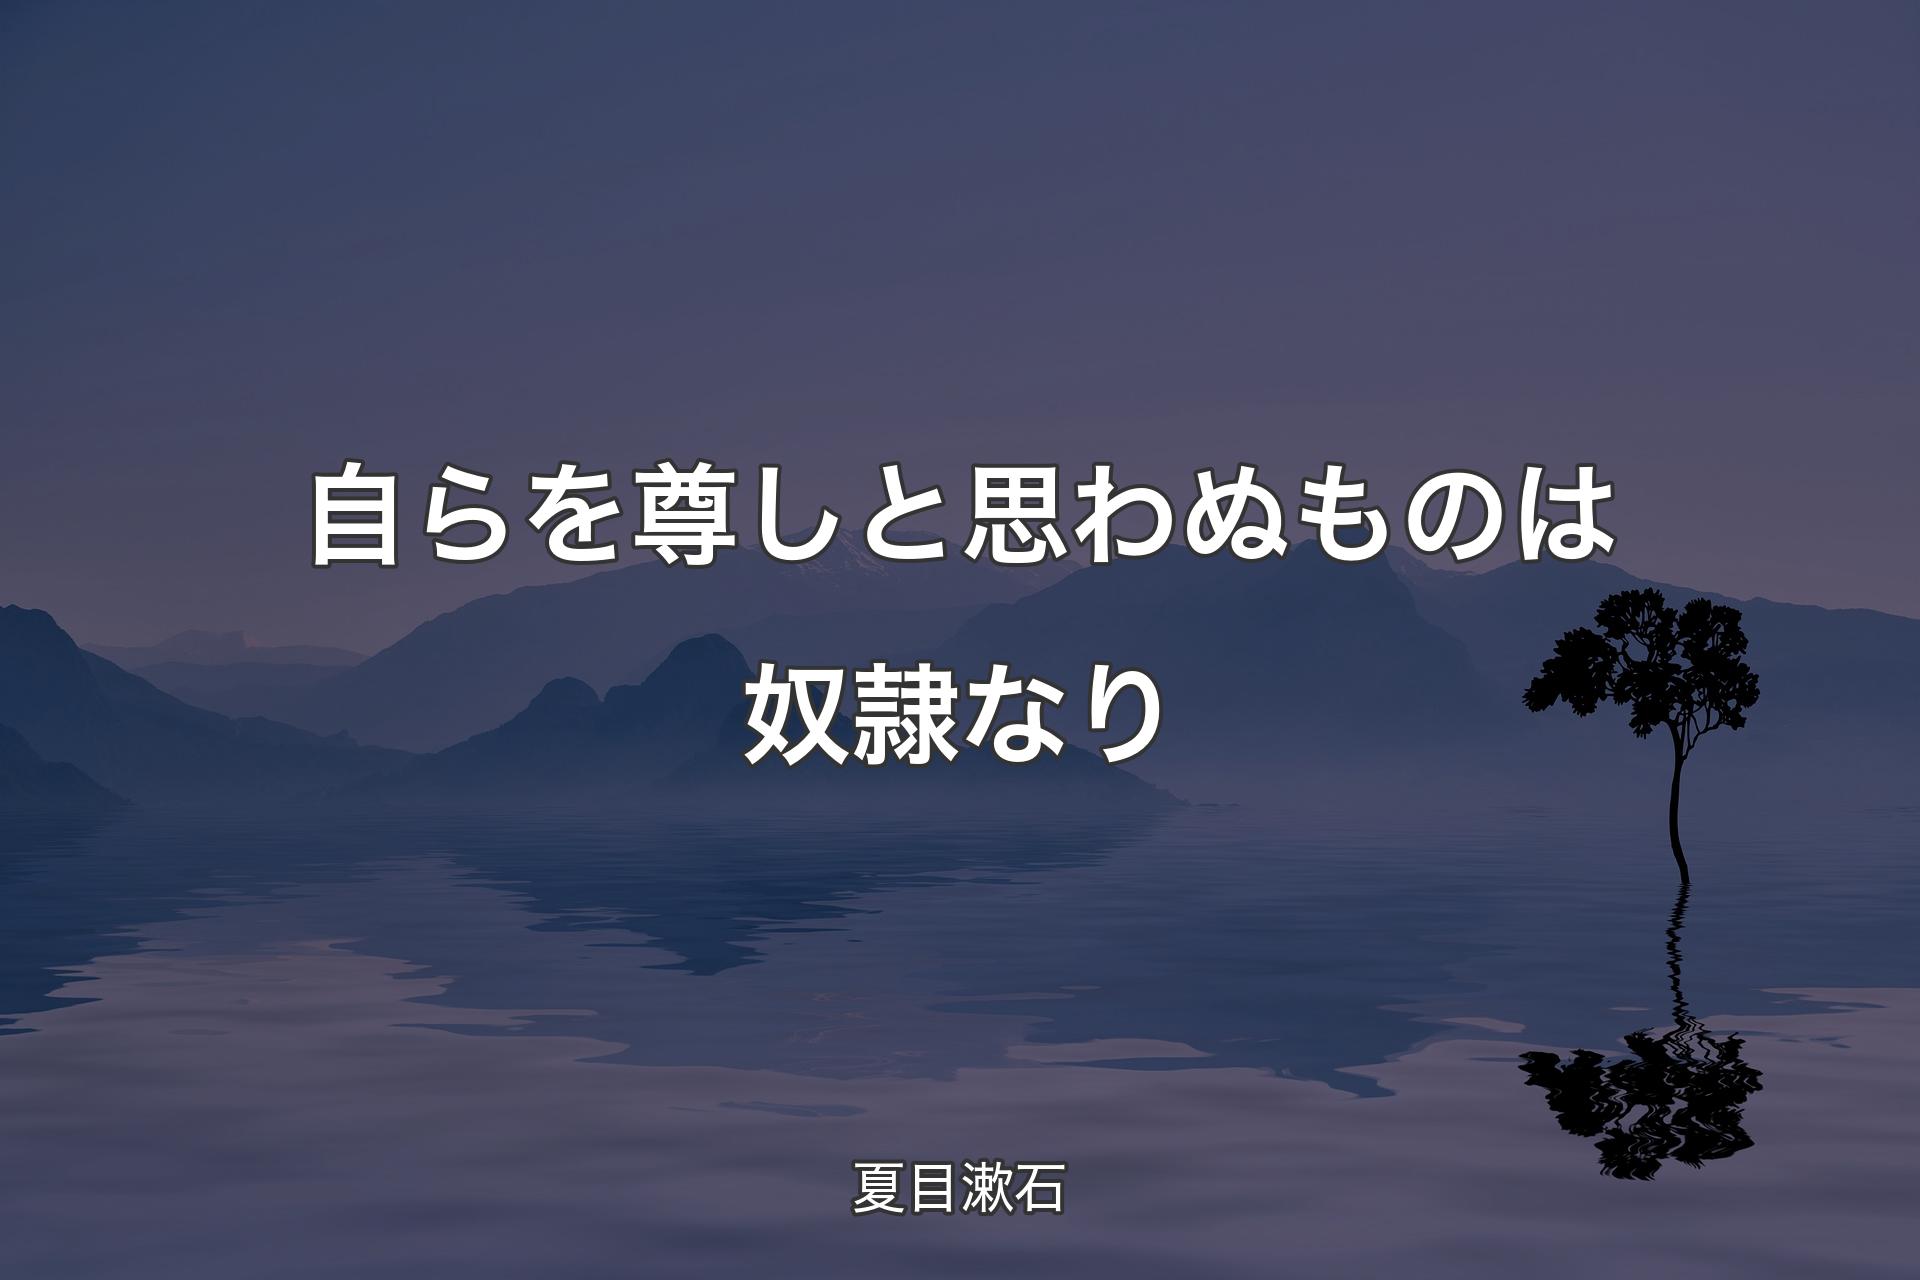 自らを尊しと思わぬものは奴隷なり - 夏目漱石